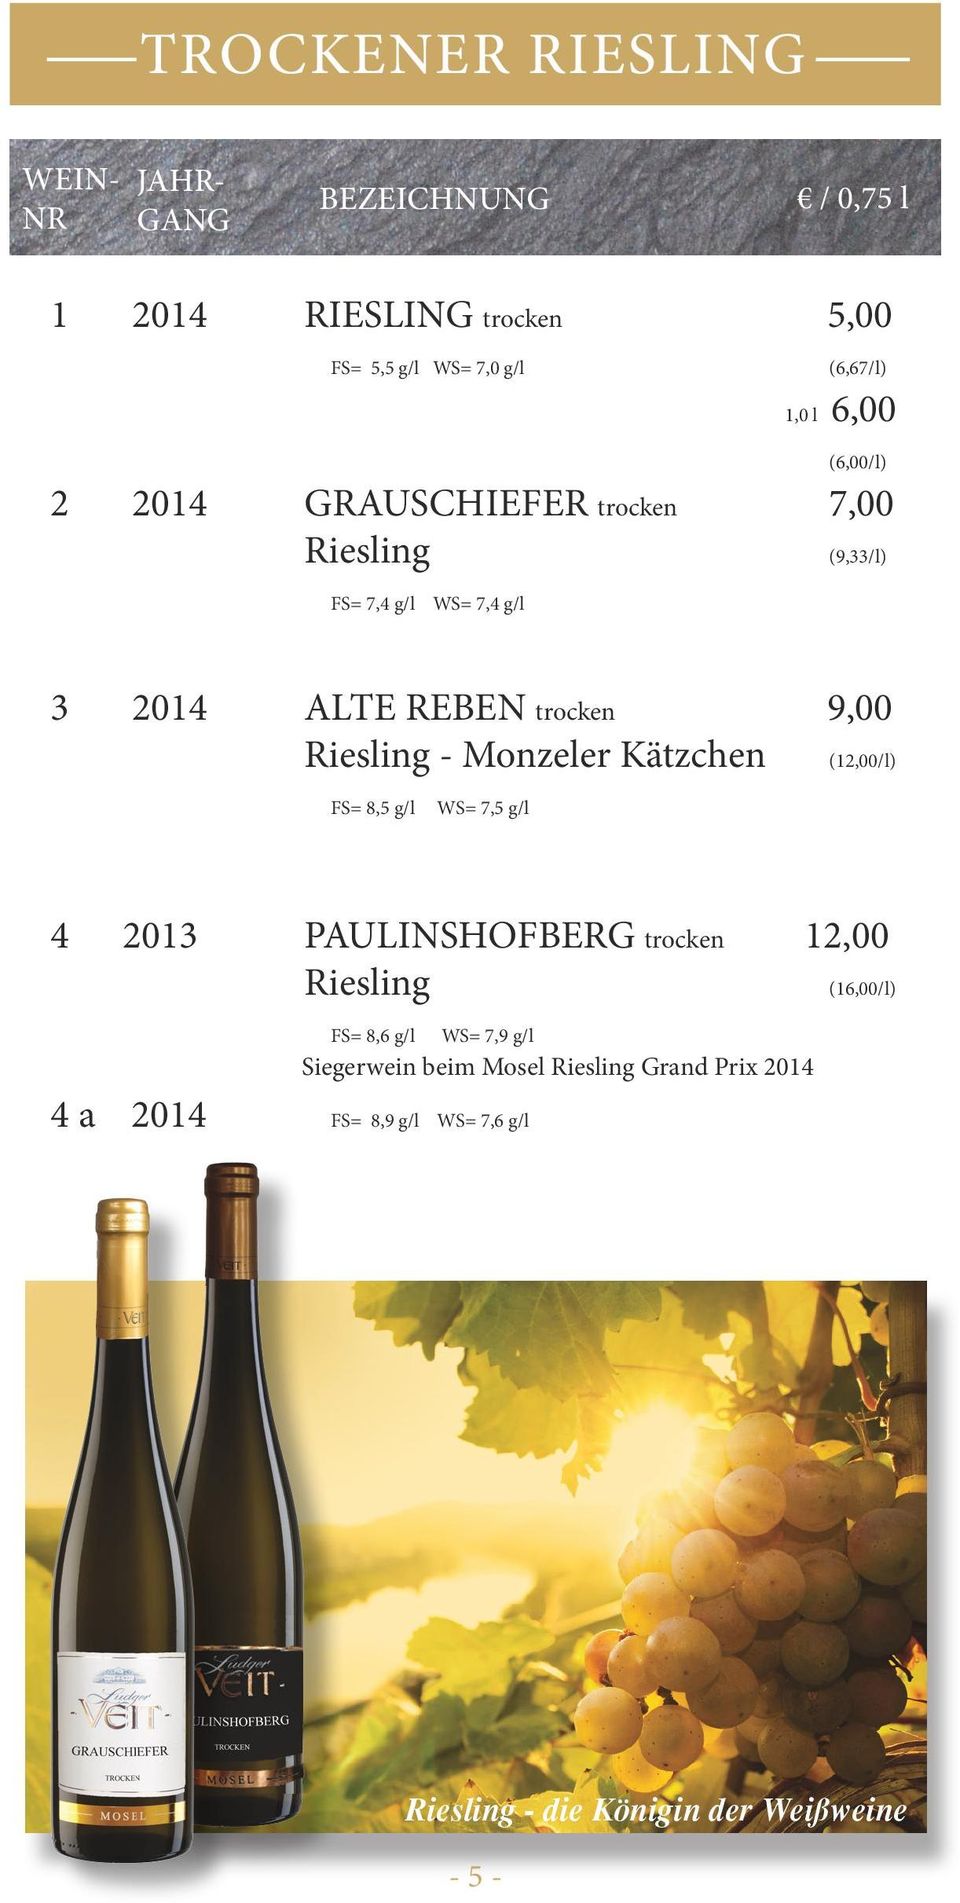 Riesling - Monzeler Kätzchen (12,00/l) FS= 8,5 g/l WS= 7,5 g/l 4 2013 PAULINSHOFBERG trocken 12,00 Riesling (16,00/l) 4 a 2014